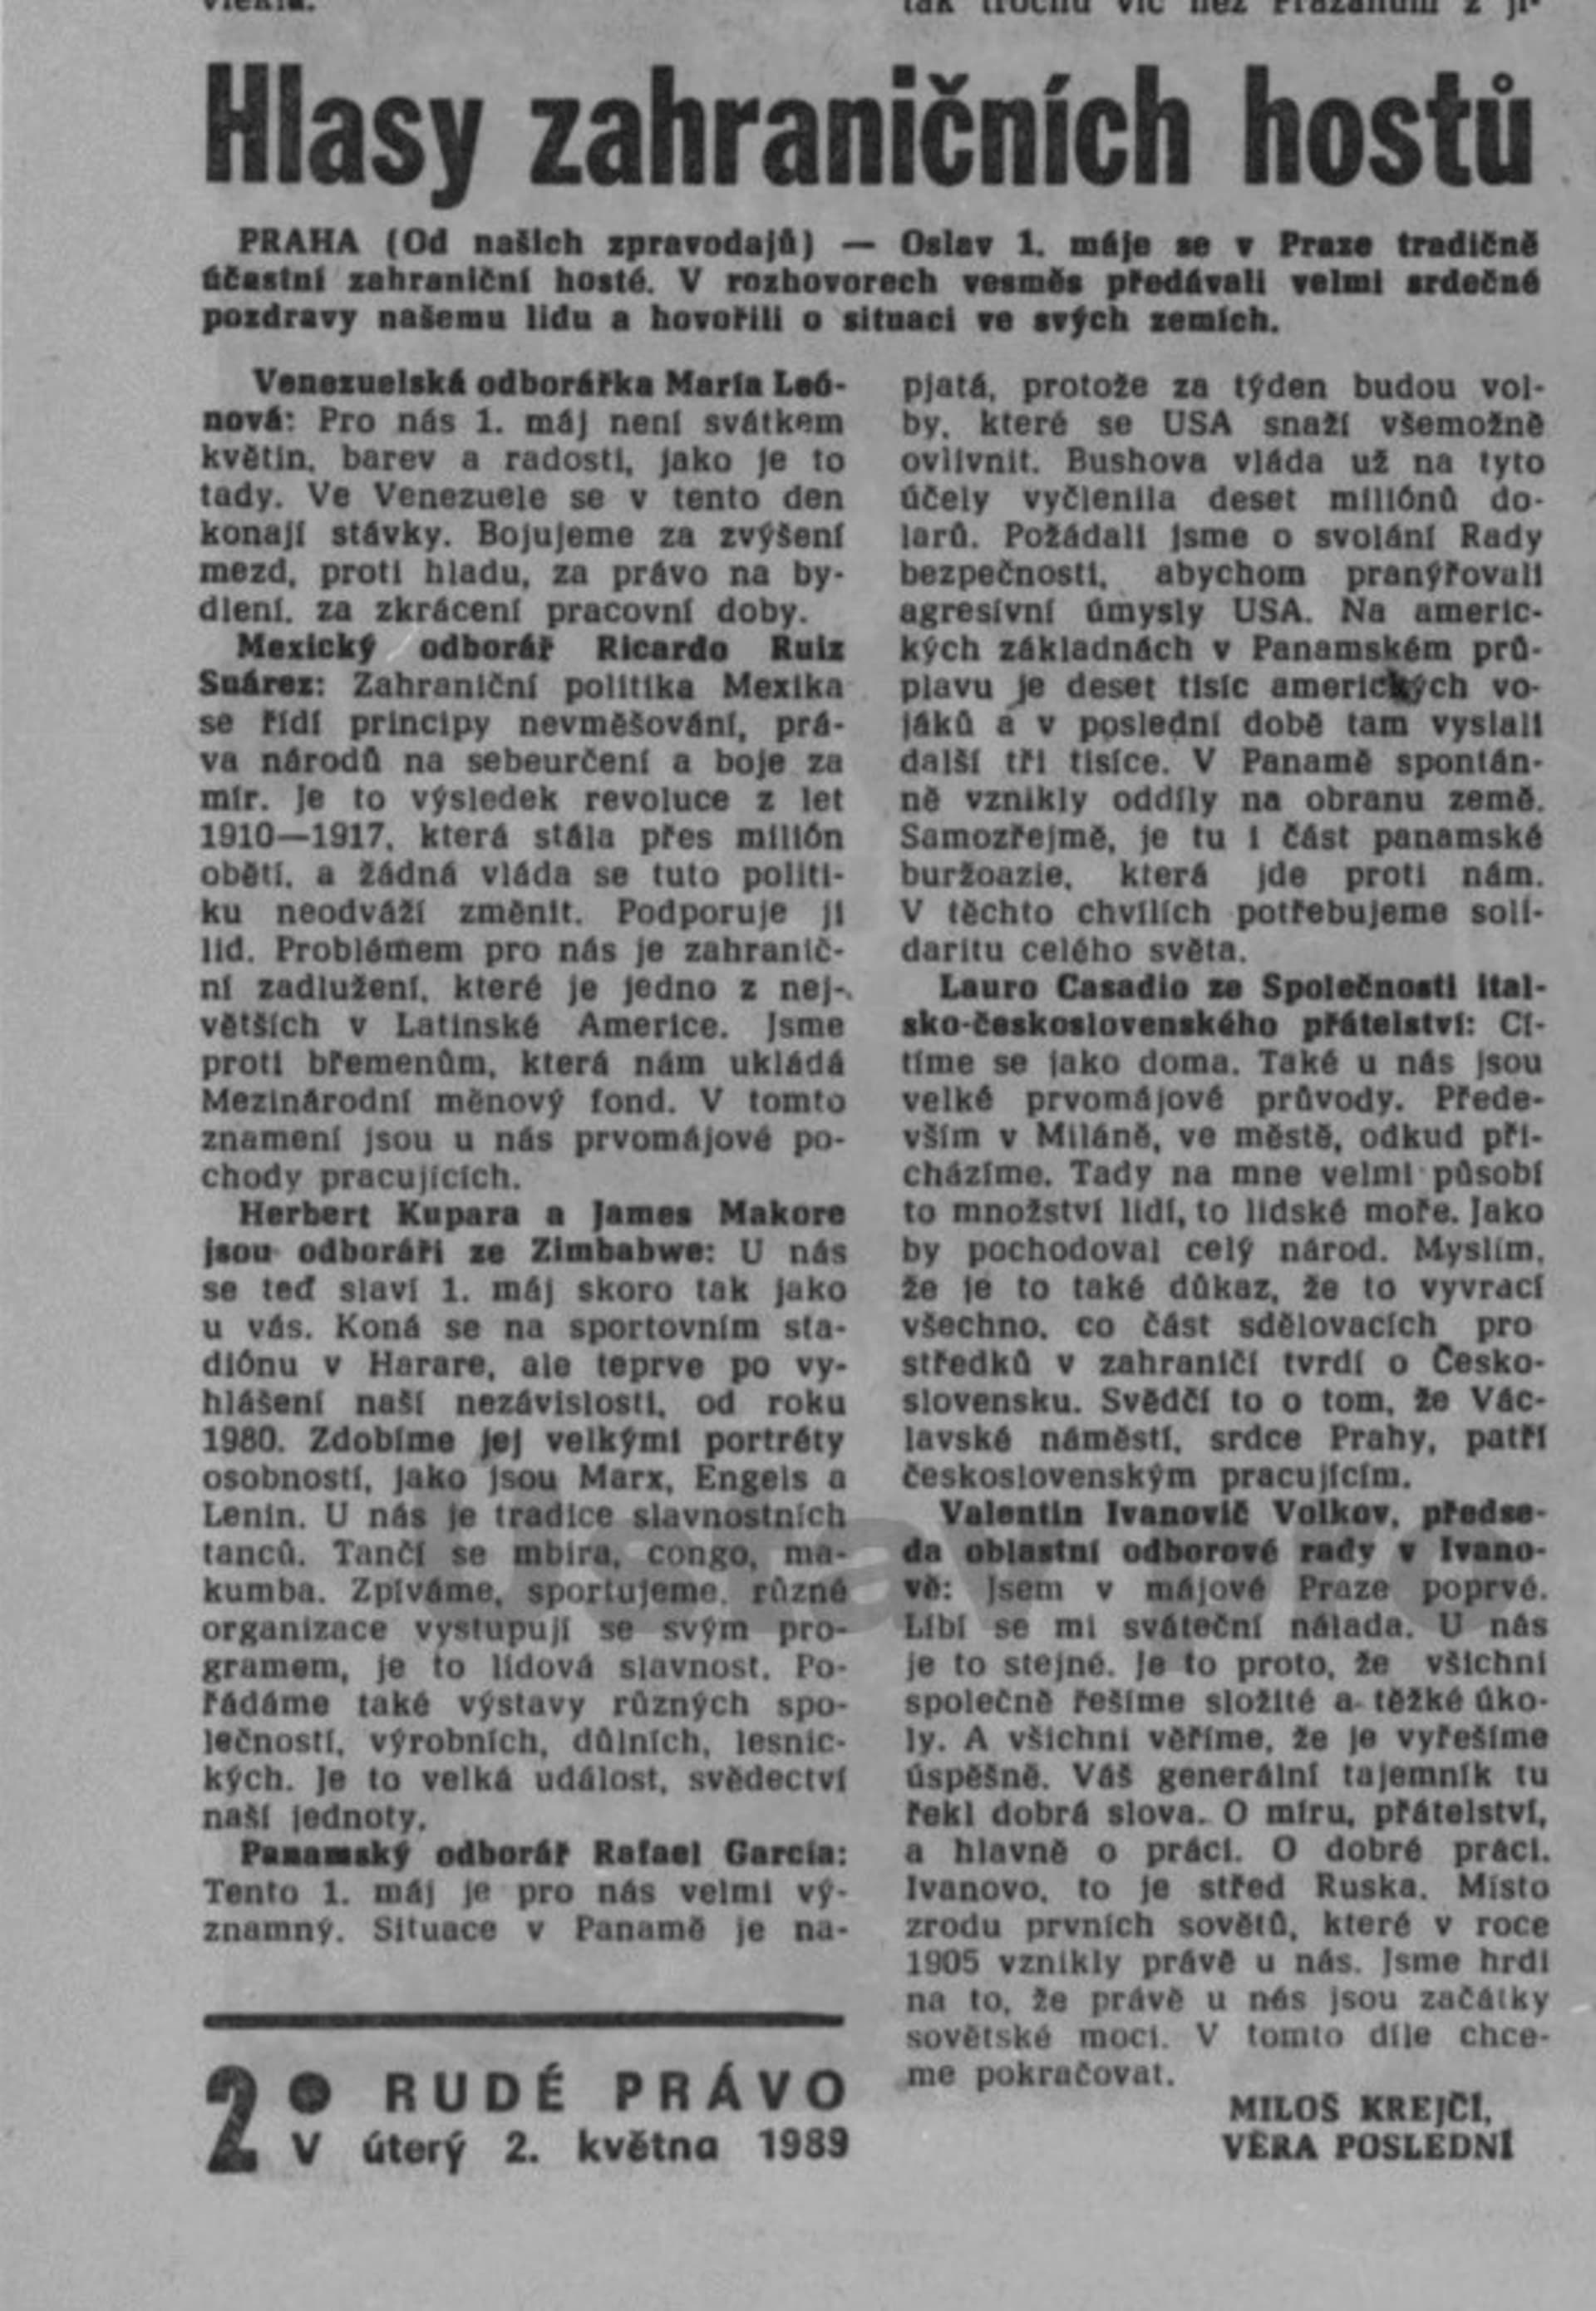 Rudé právo o zahraničních hostech na oslavách Svátku práce 1. května 1989